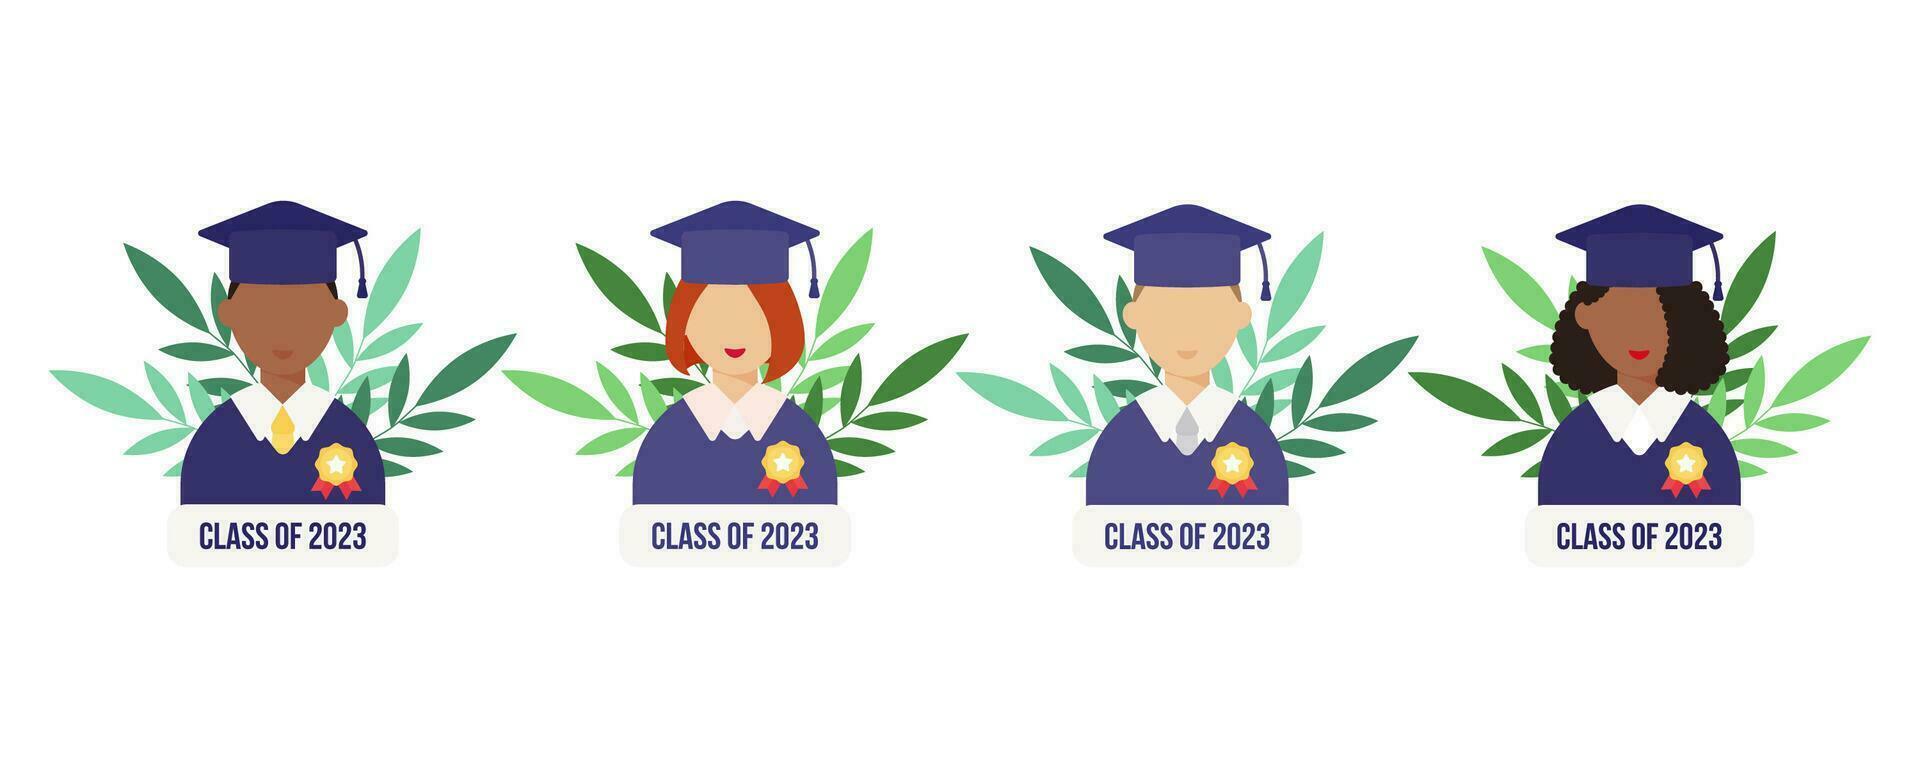 graduación día. conjunto de estudiante con medalla. letras clase de 2023. plano estilo masculino y femenino. vector